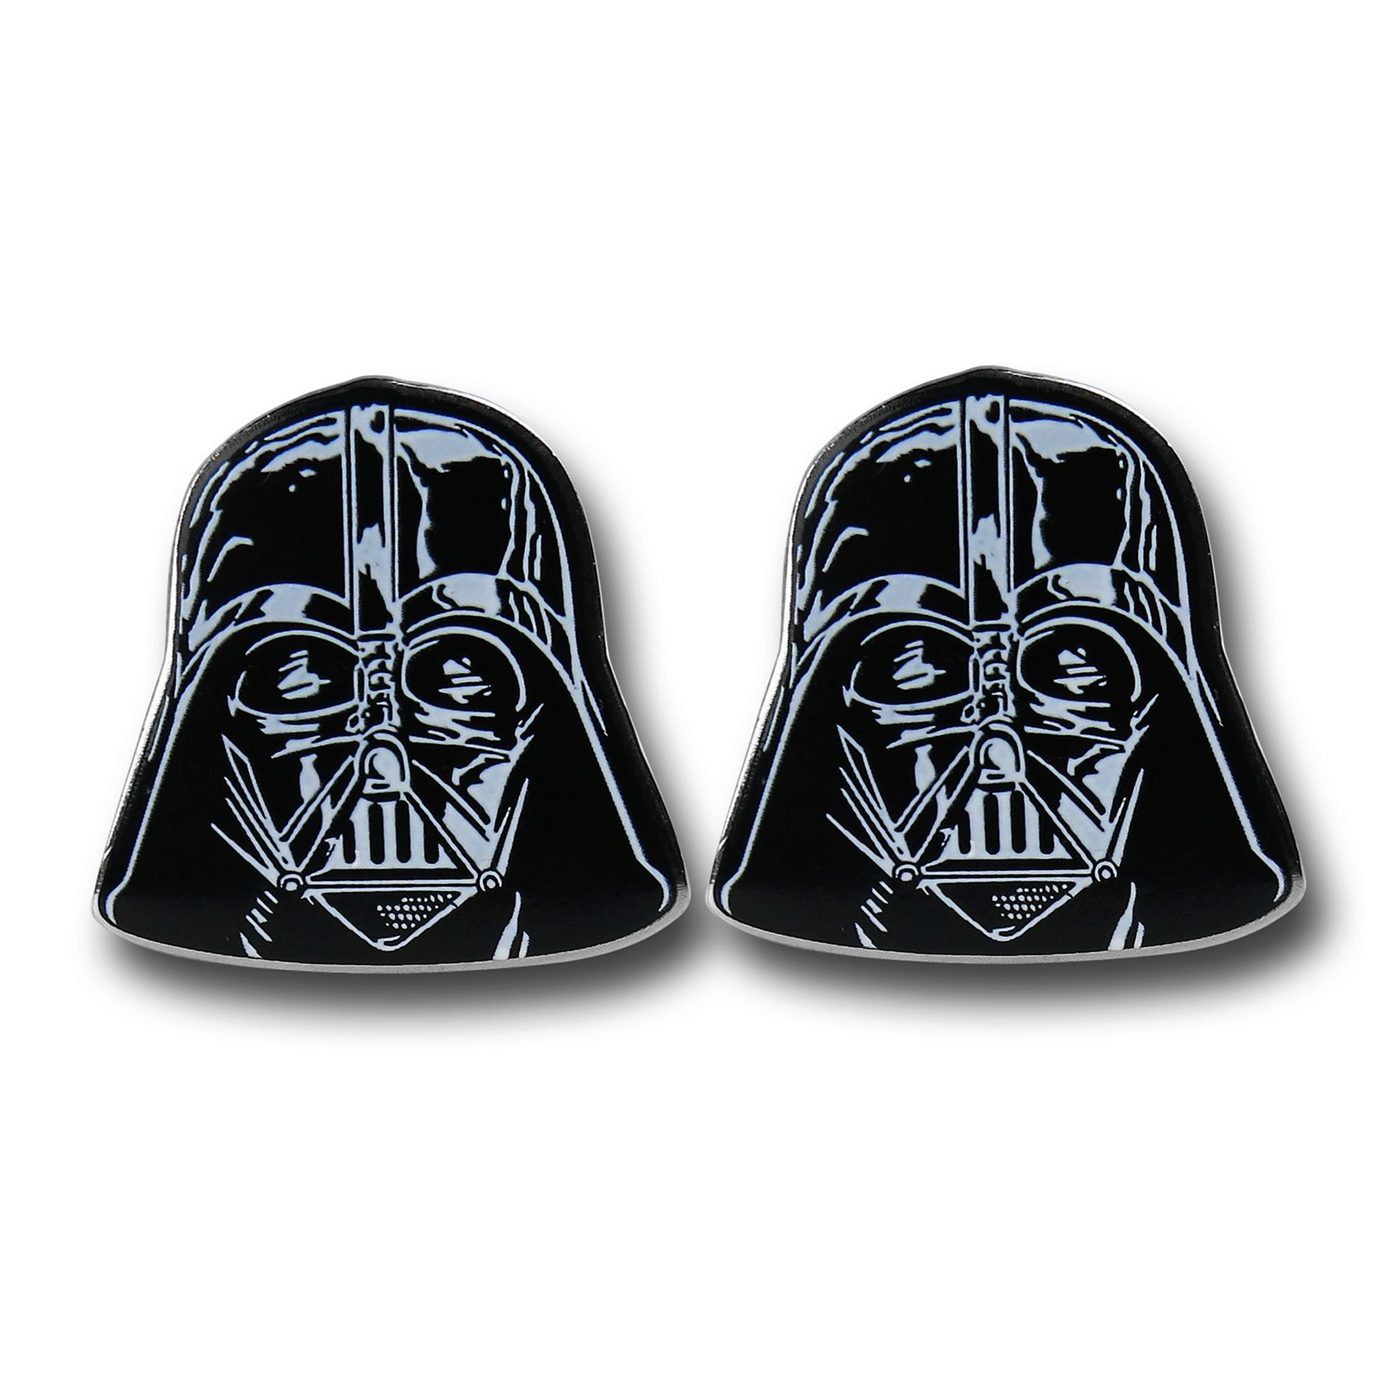 Star Wars Darth Vader Helmet Cufflinks